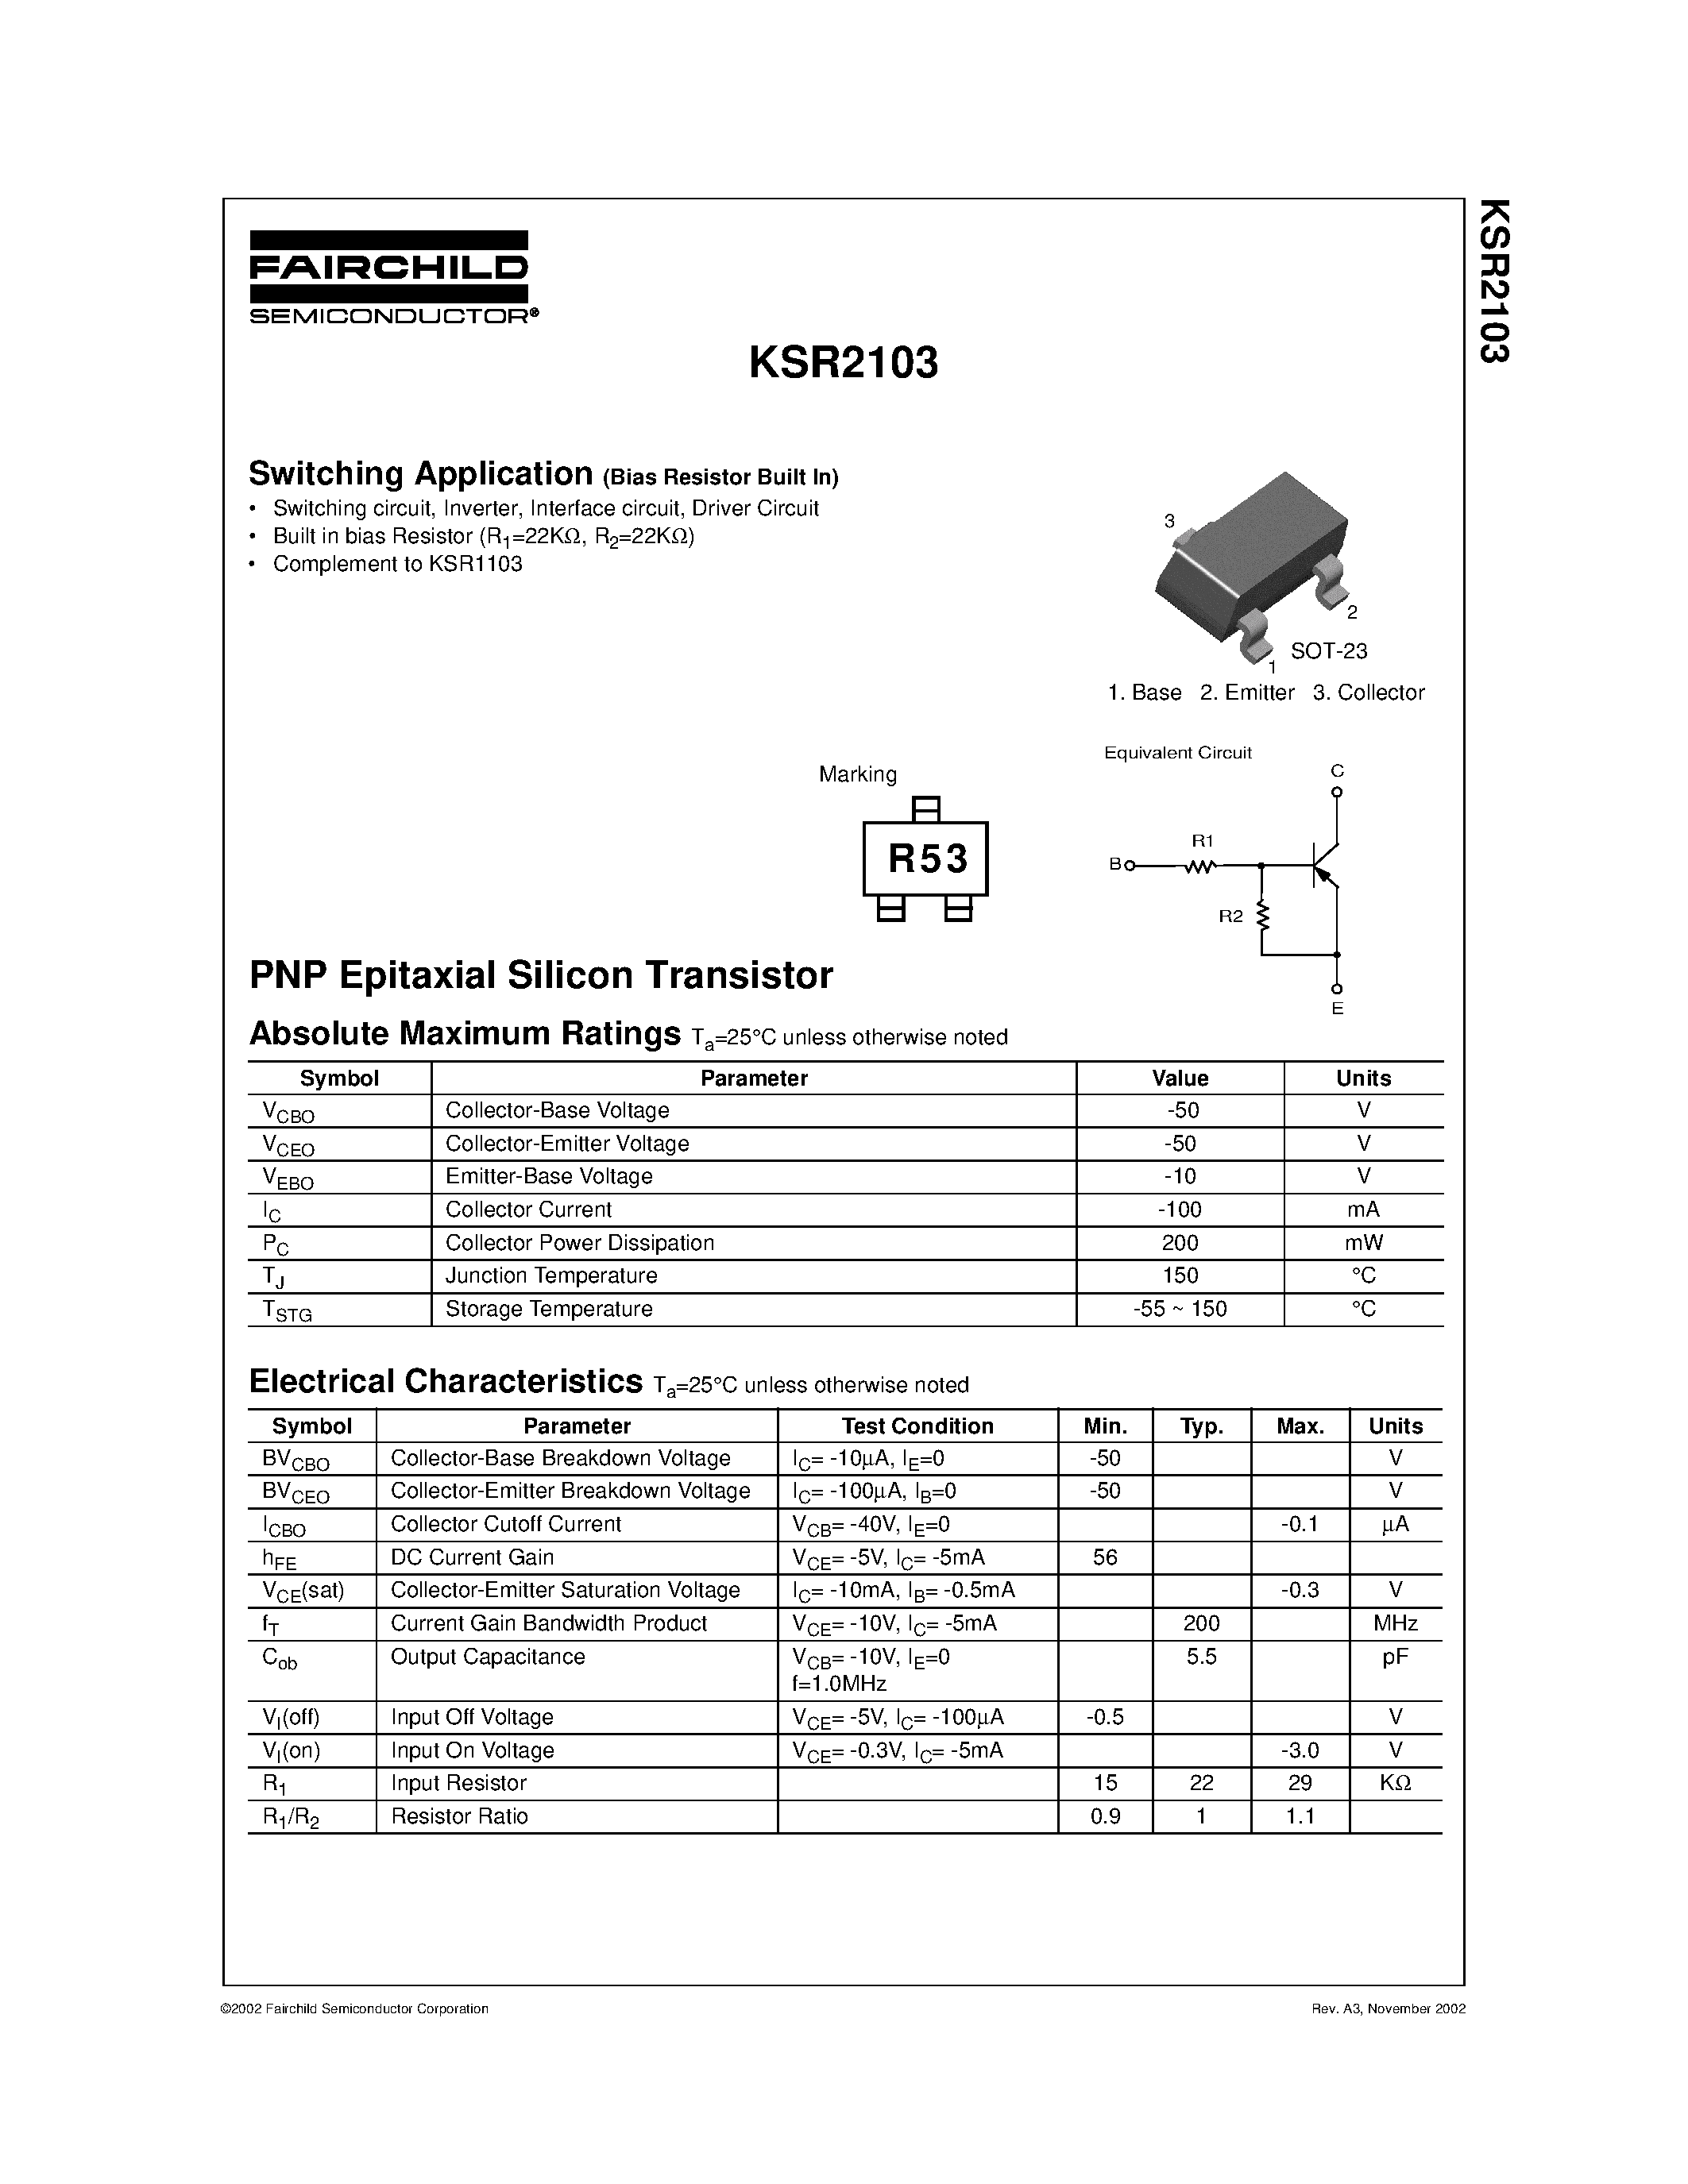 Datasheet KSR2103 - Switching Application page 1